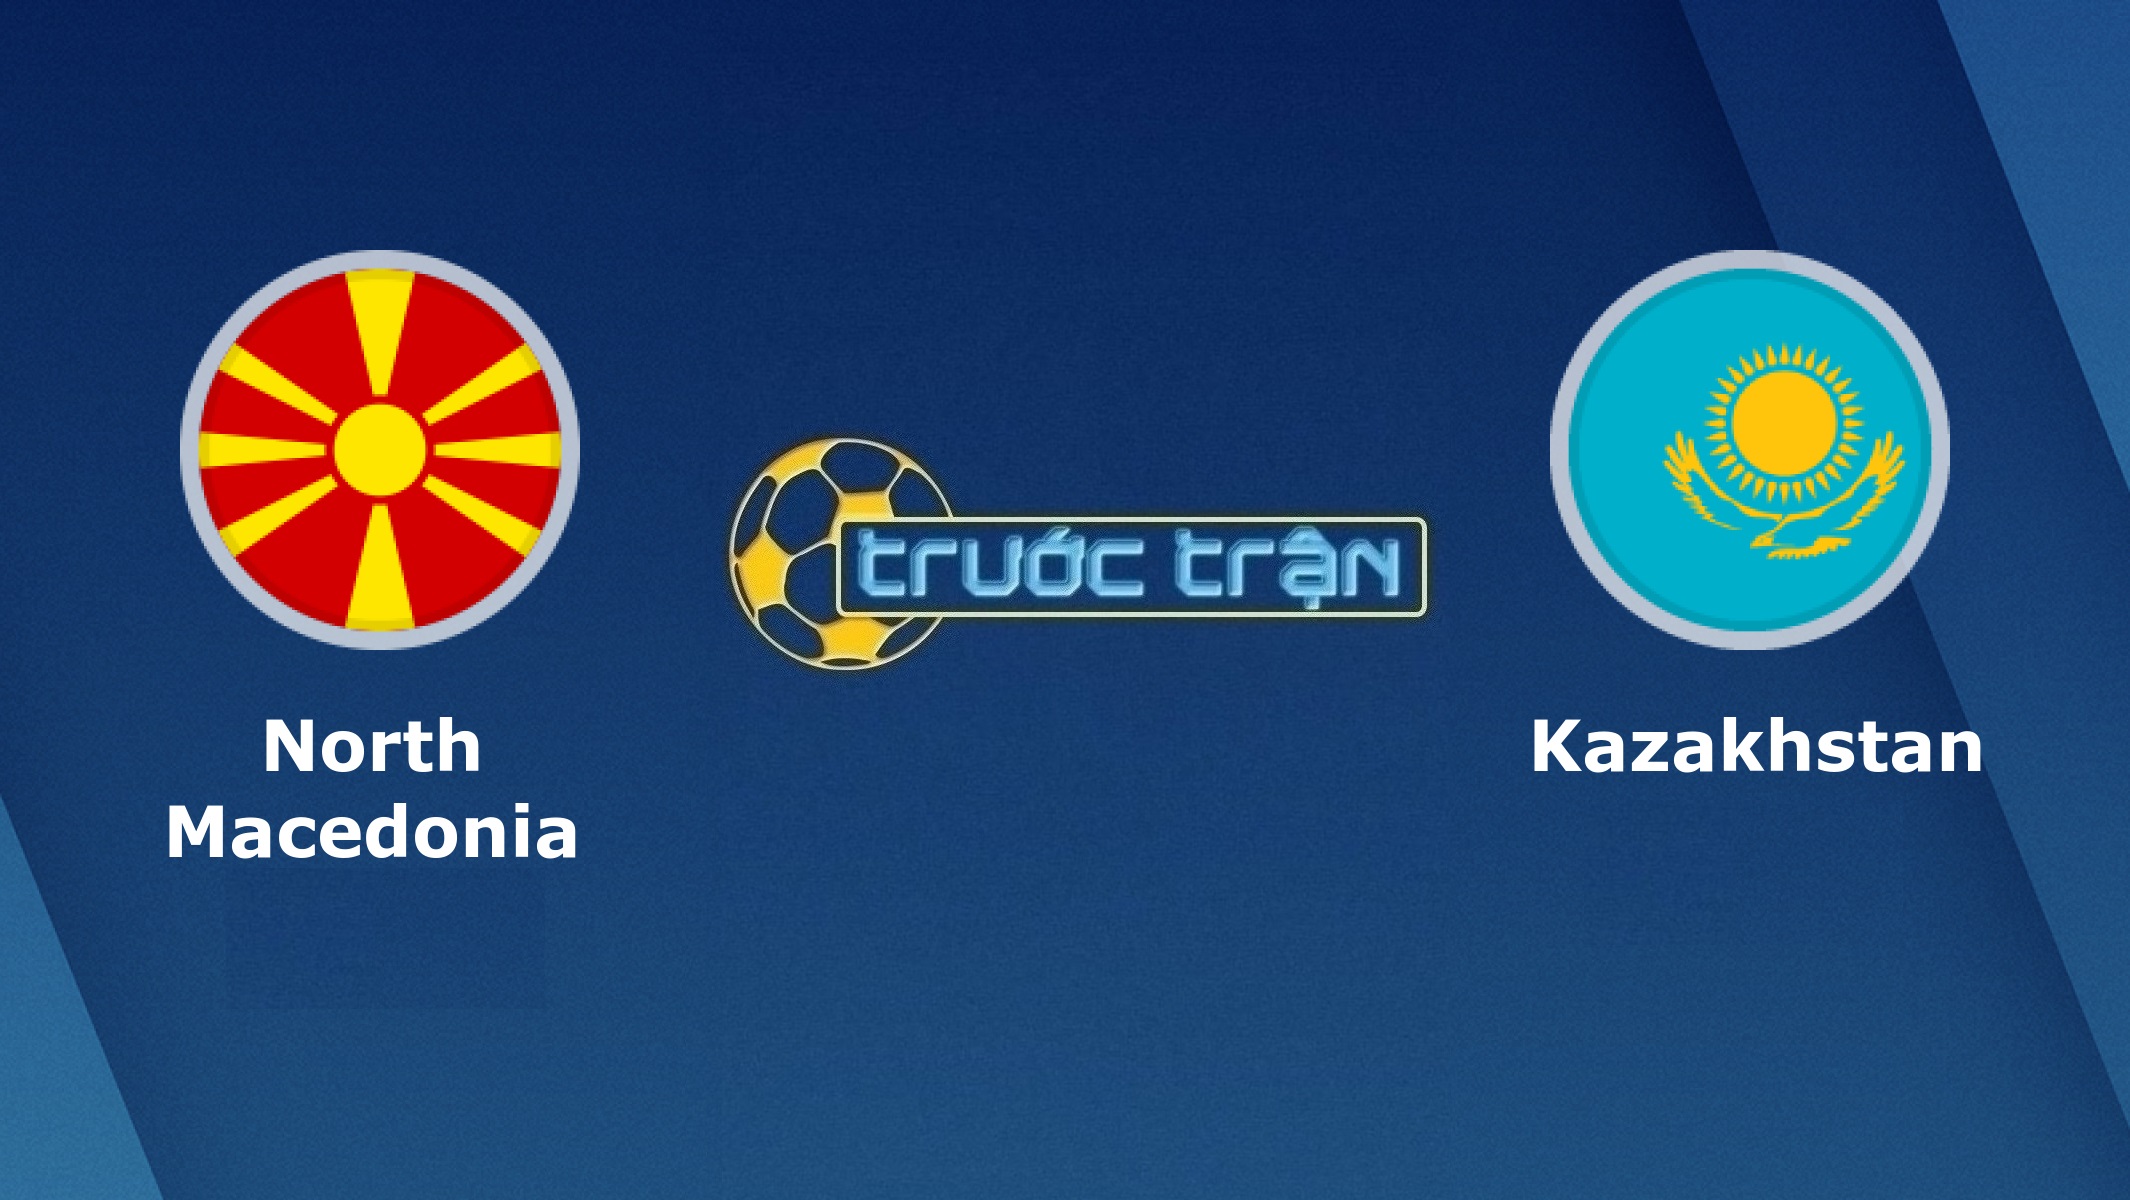 Bắc Macedonia vs Kazakhstan – Tip kèo bóng đá hôm nay – 23h00 04/06/2021